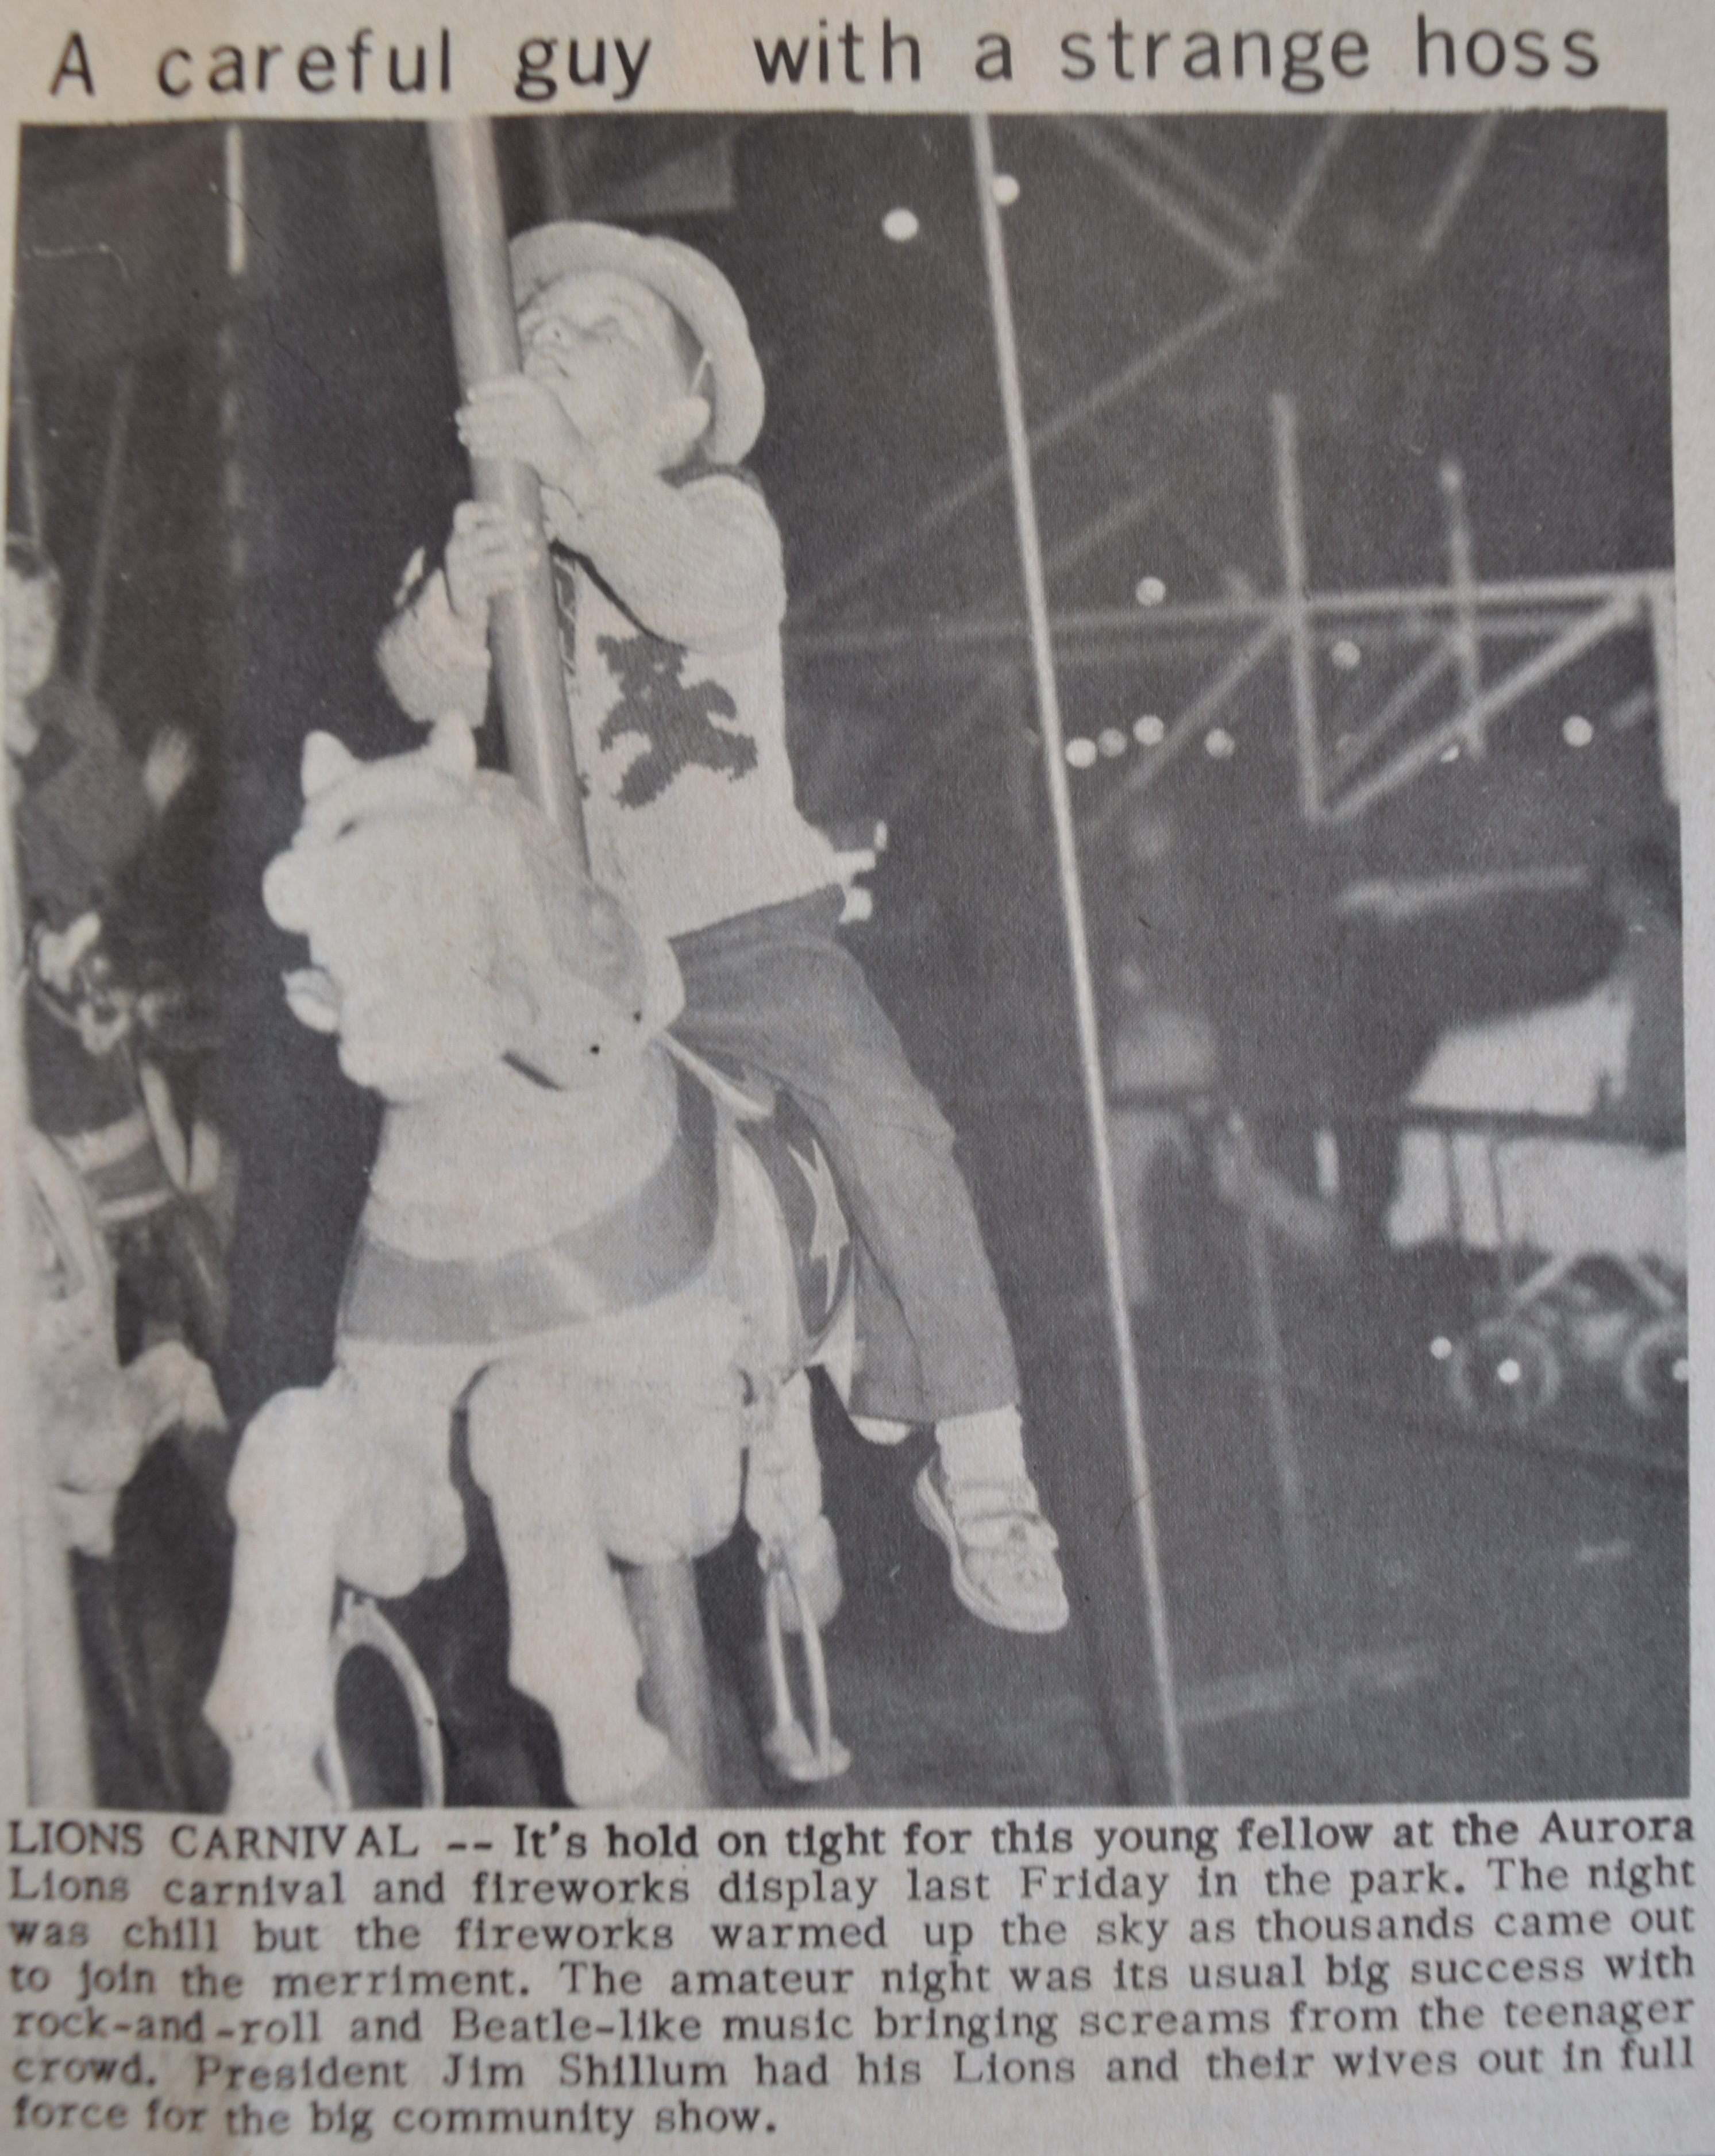 On voit une coupure de journal avec une  photo en noir et blanc montrant un petit garçon monté sur un cheval de manège, il porte un chapeau et regarde le ciel, au fond , un landau, des gens et une grande roue.